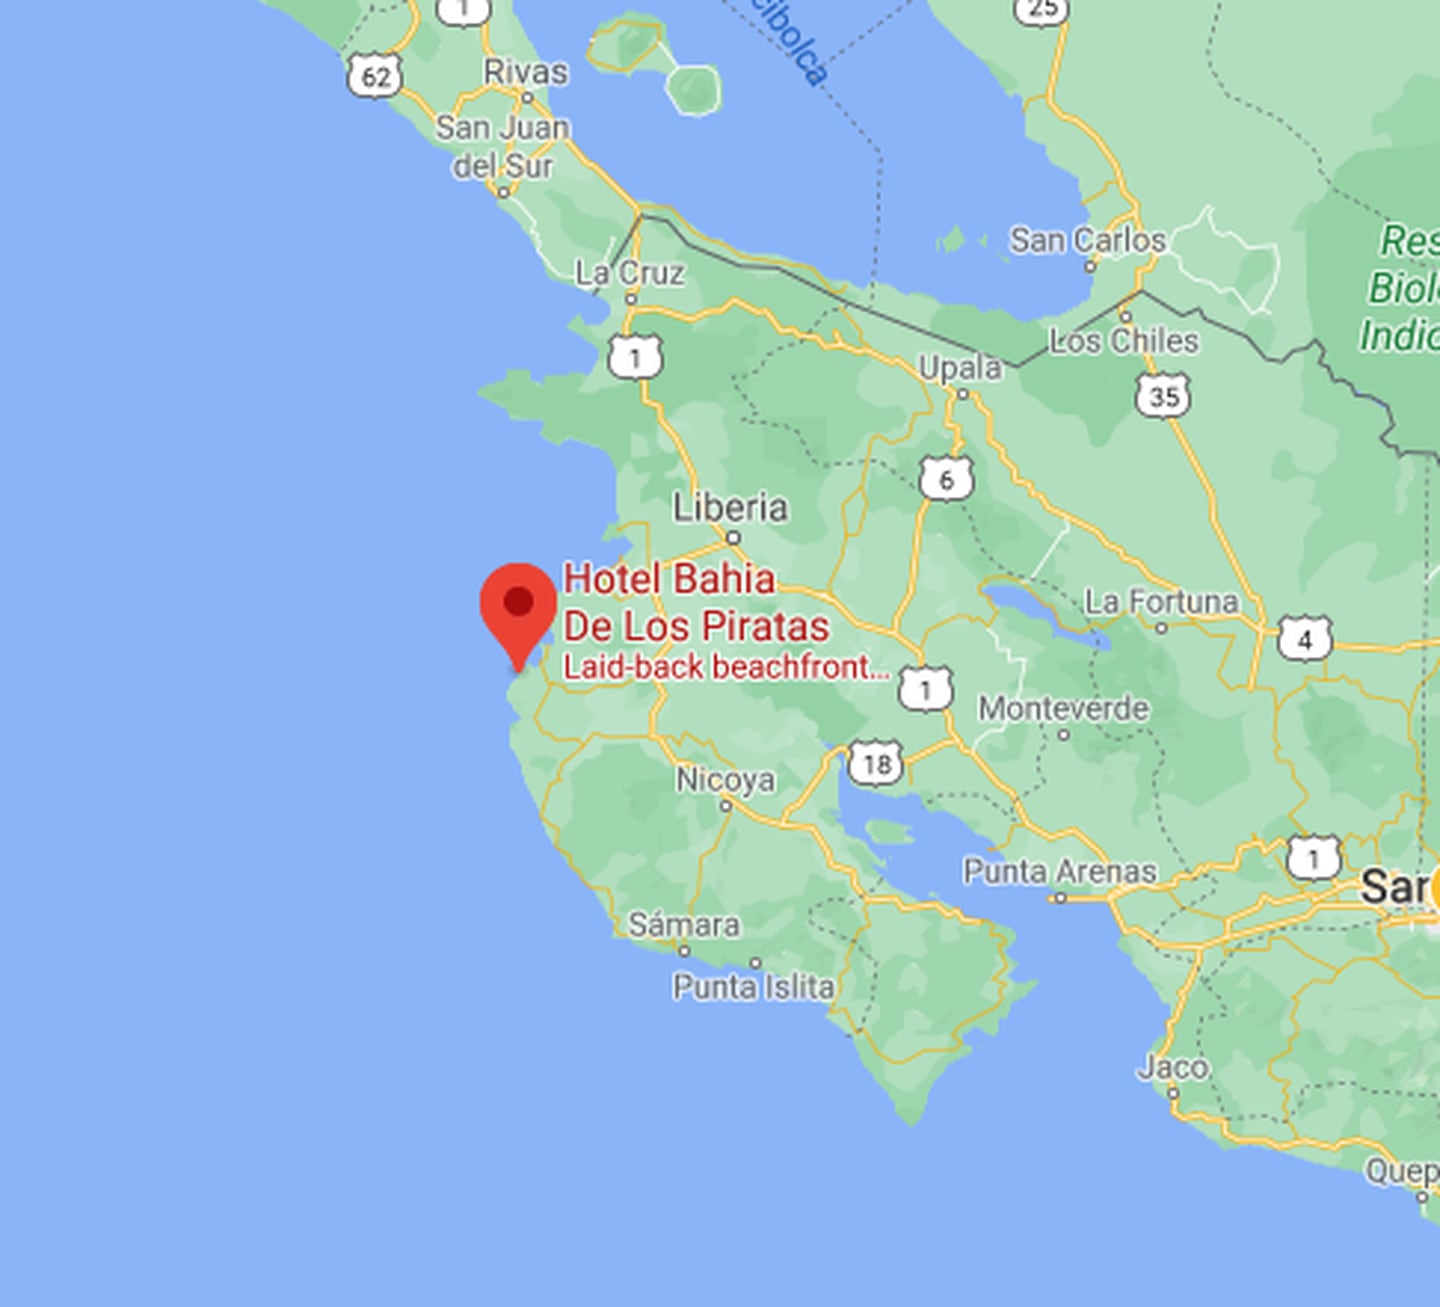 La búsqueda se concentra en ese sector del Pacífico norte y se realiza por mar y por tierra. Imagen: google maps.